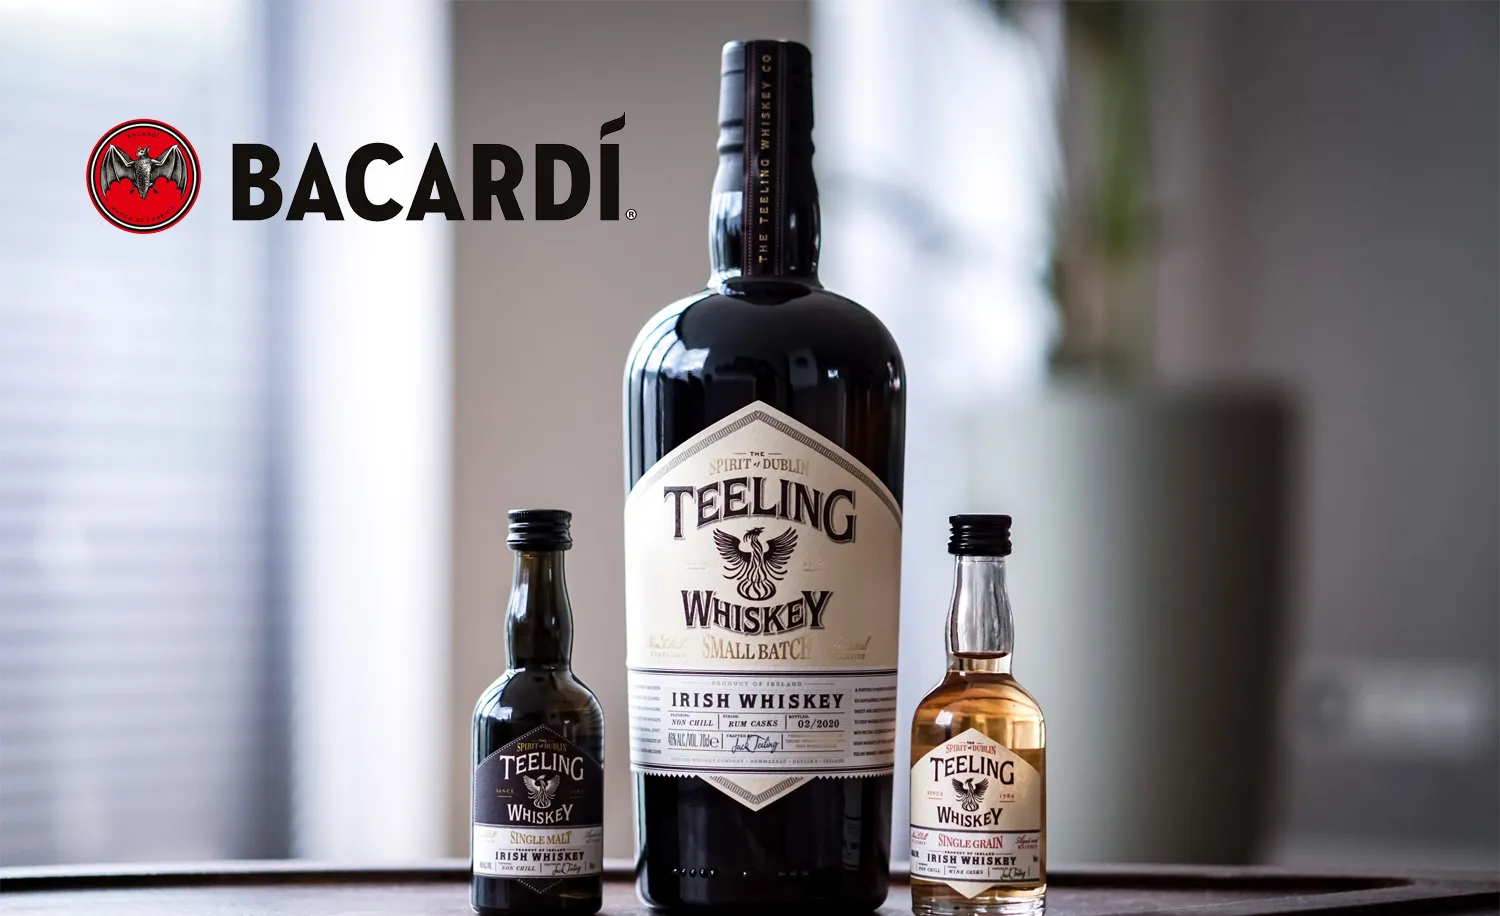 Bacardi becomes majority owner of Teeling Irish Whiskey